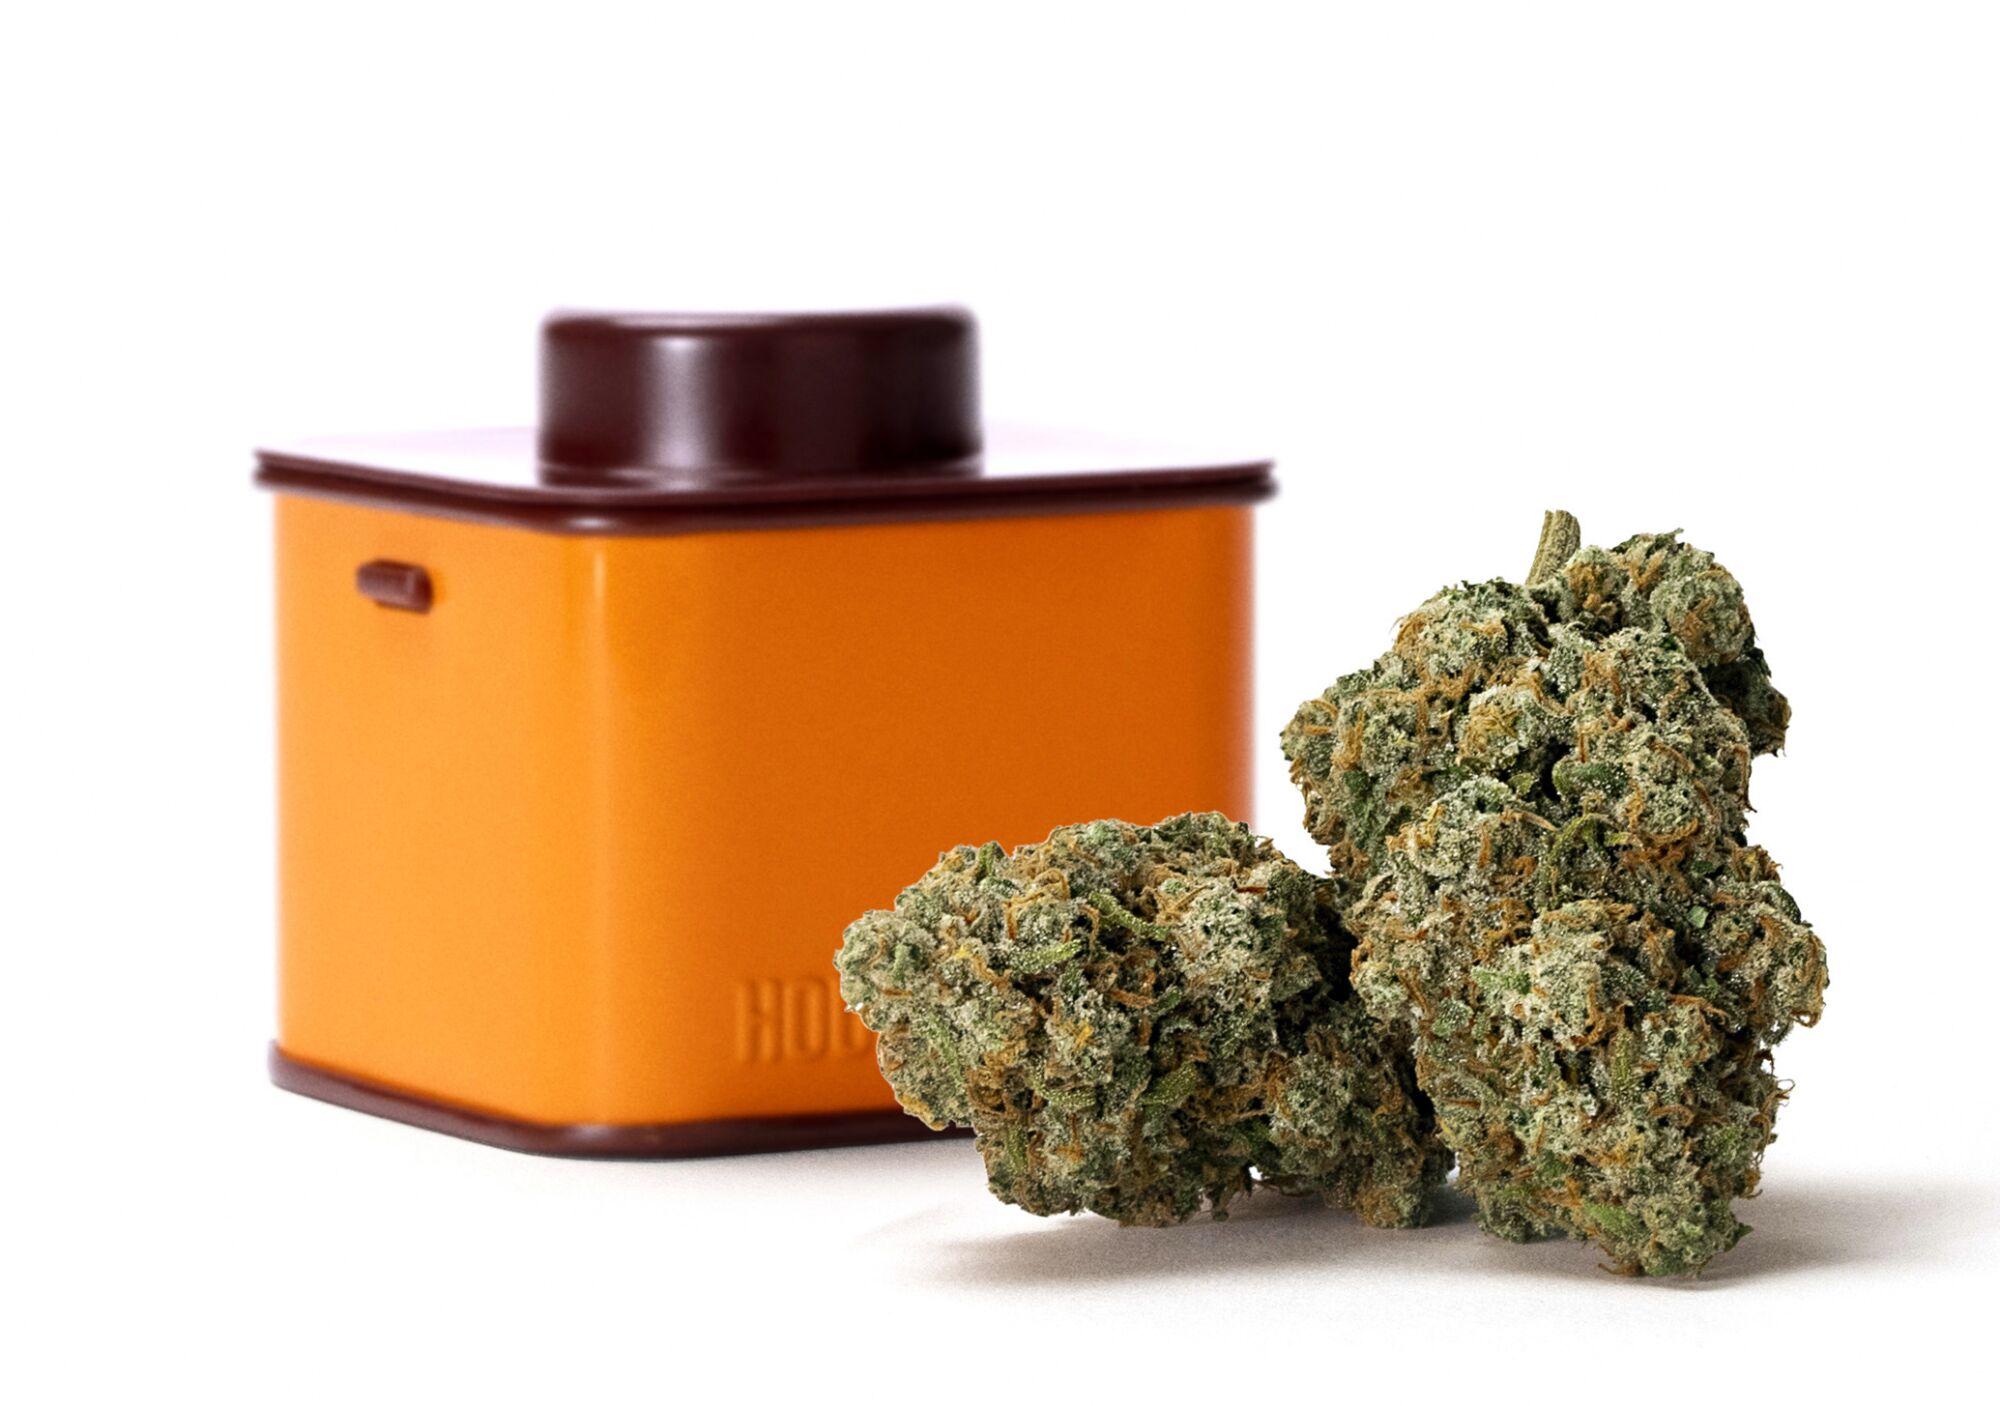 An orange tin next to a cannabis nugget.